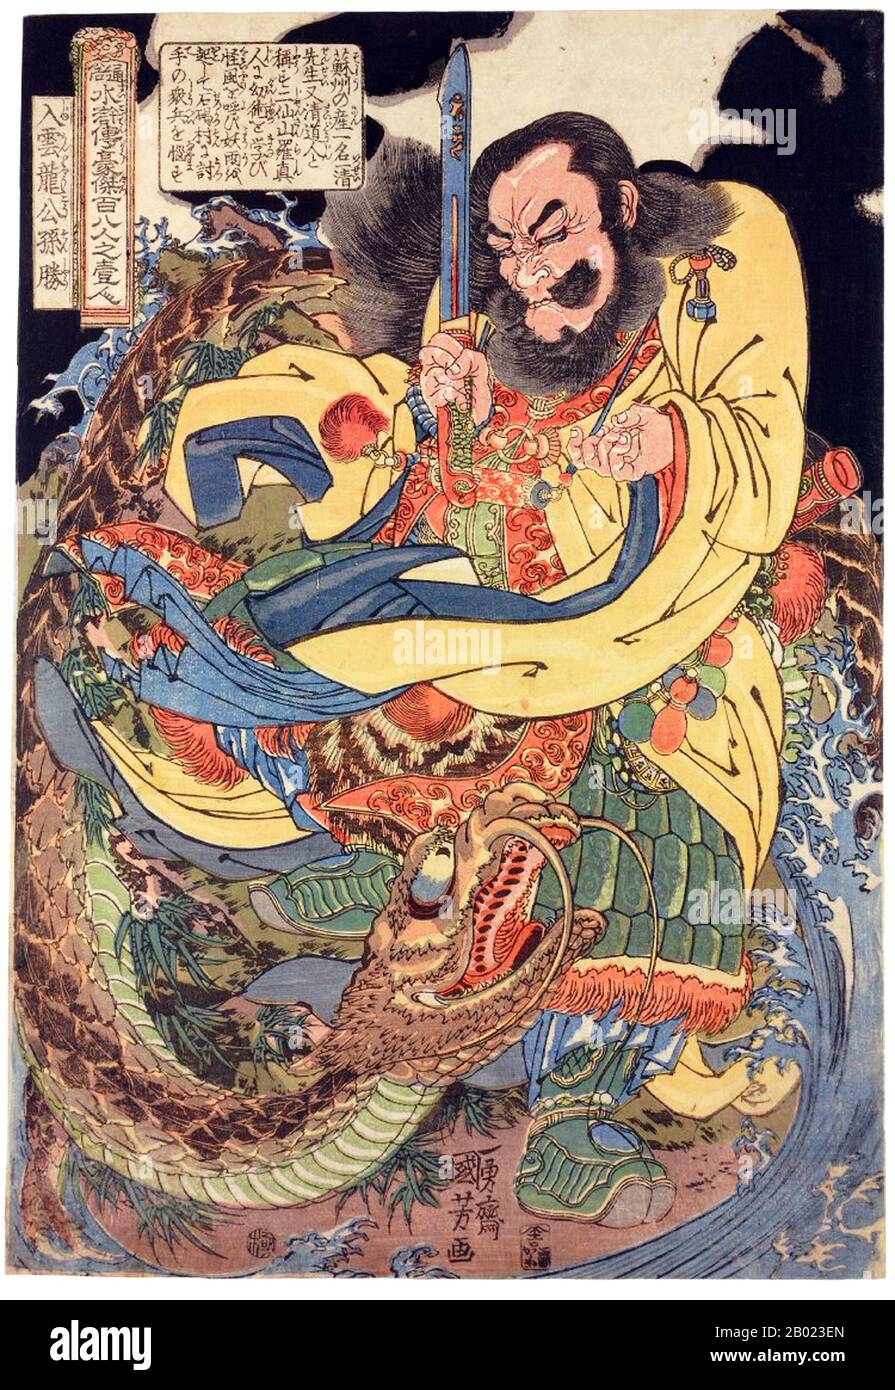 Margen de agua (conocido en chino como Shuihu Zhuan, a veces abreviado como Shuihu), también conocido como Suikoden en japonés, así como los Outlaws de la marisma, Tale de los Marismas, todos los hombres son Hermanos, hombres de los Marismas, O los Marismas del Monte Liang, es una novela del siglo XIV y una de las cuatro grandes novelas clásicas de la literatura China. Atribuido a Shi Nai'an y escrito en chino vernáculo. Foto de stock